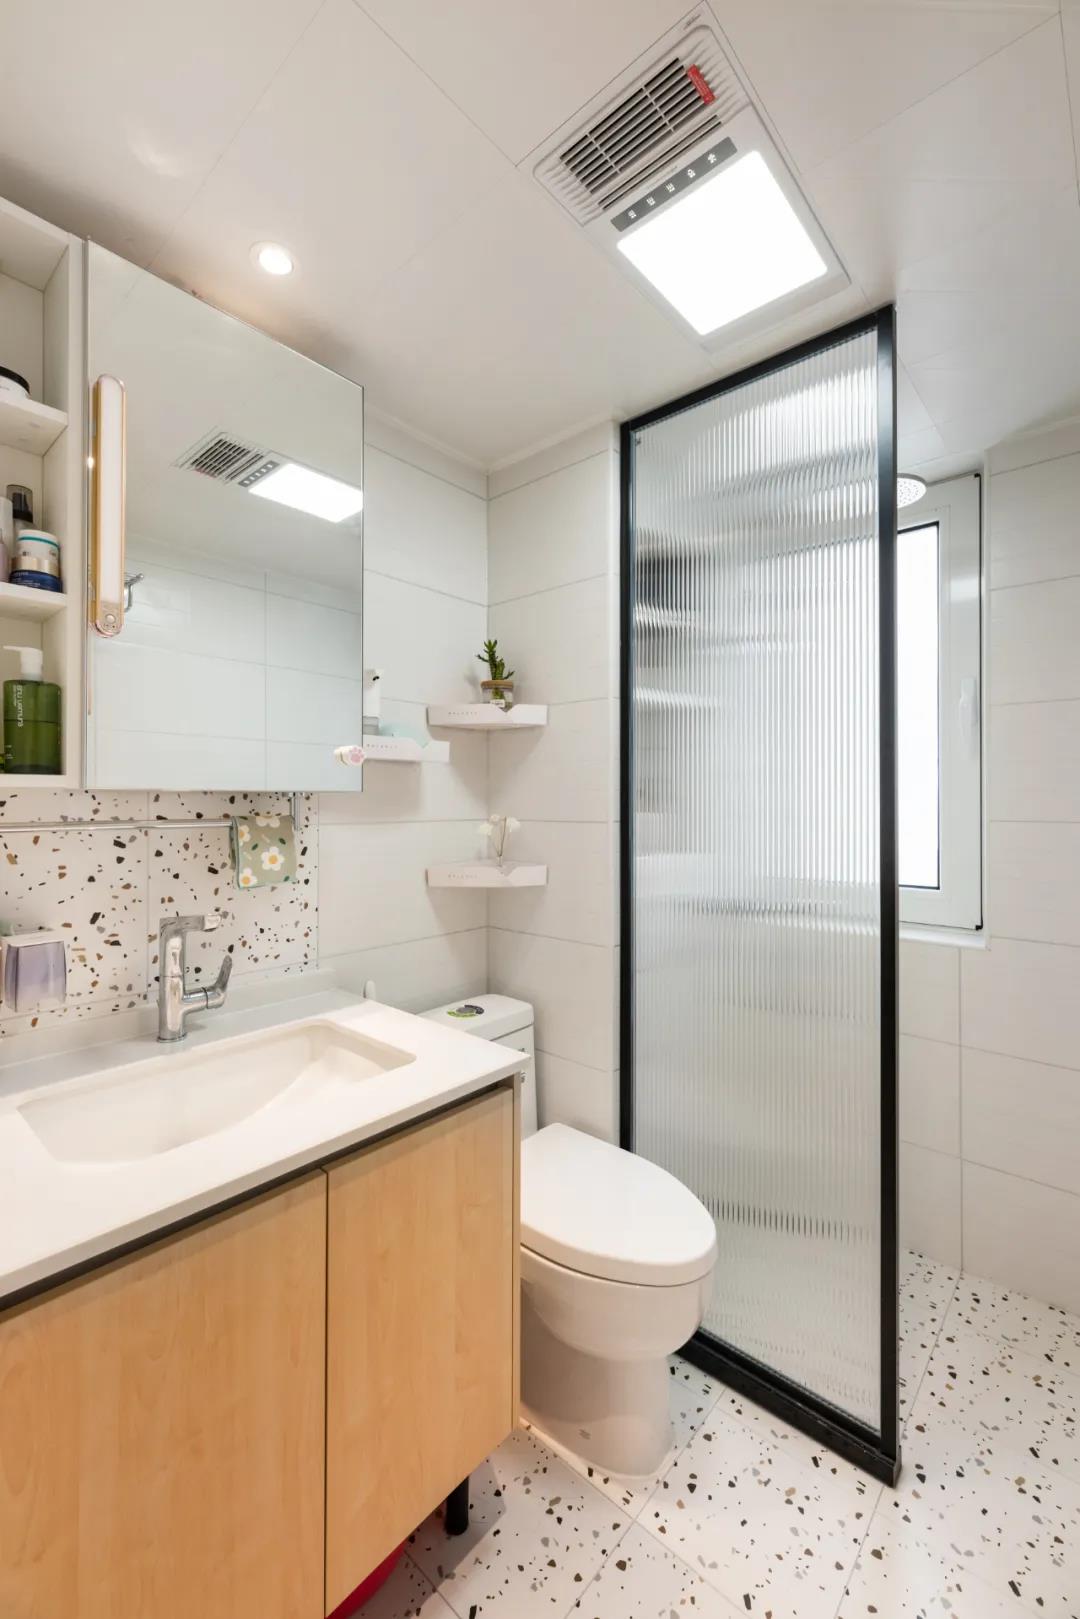 卫生间优雅内敛的点状墙面提升了视觉动感，使空间充满生气，清新舒适。